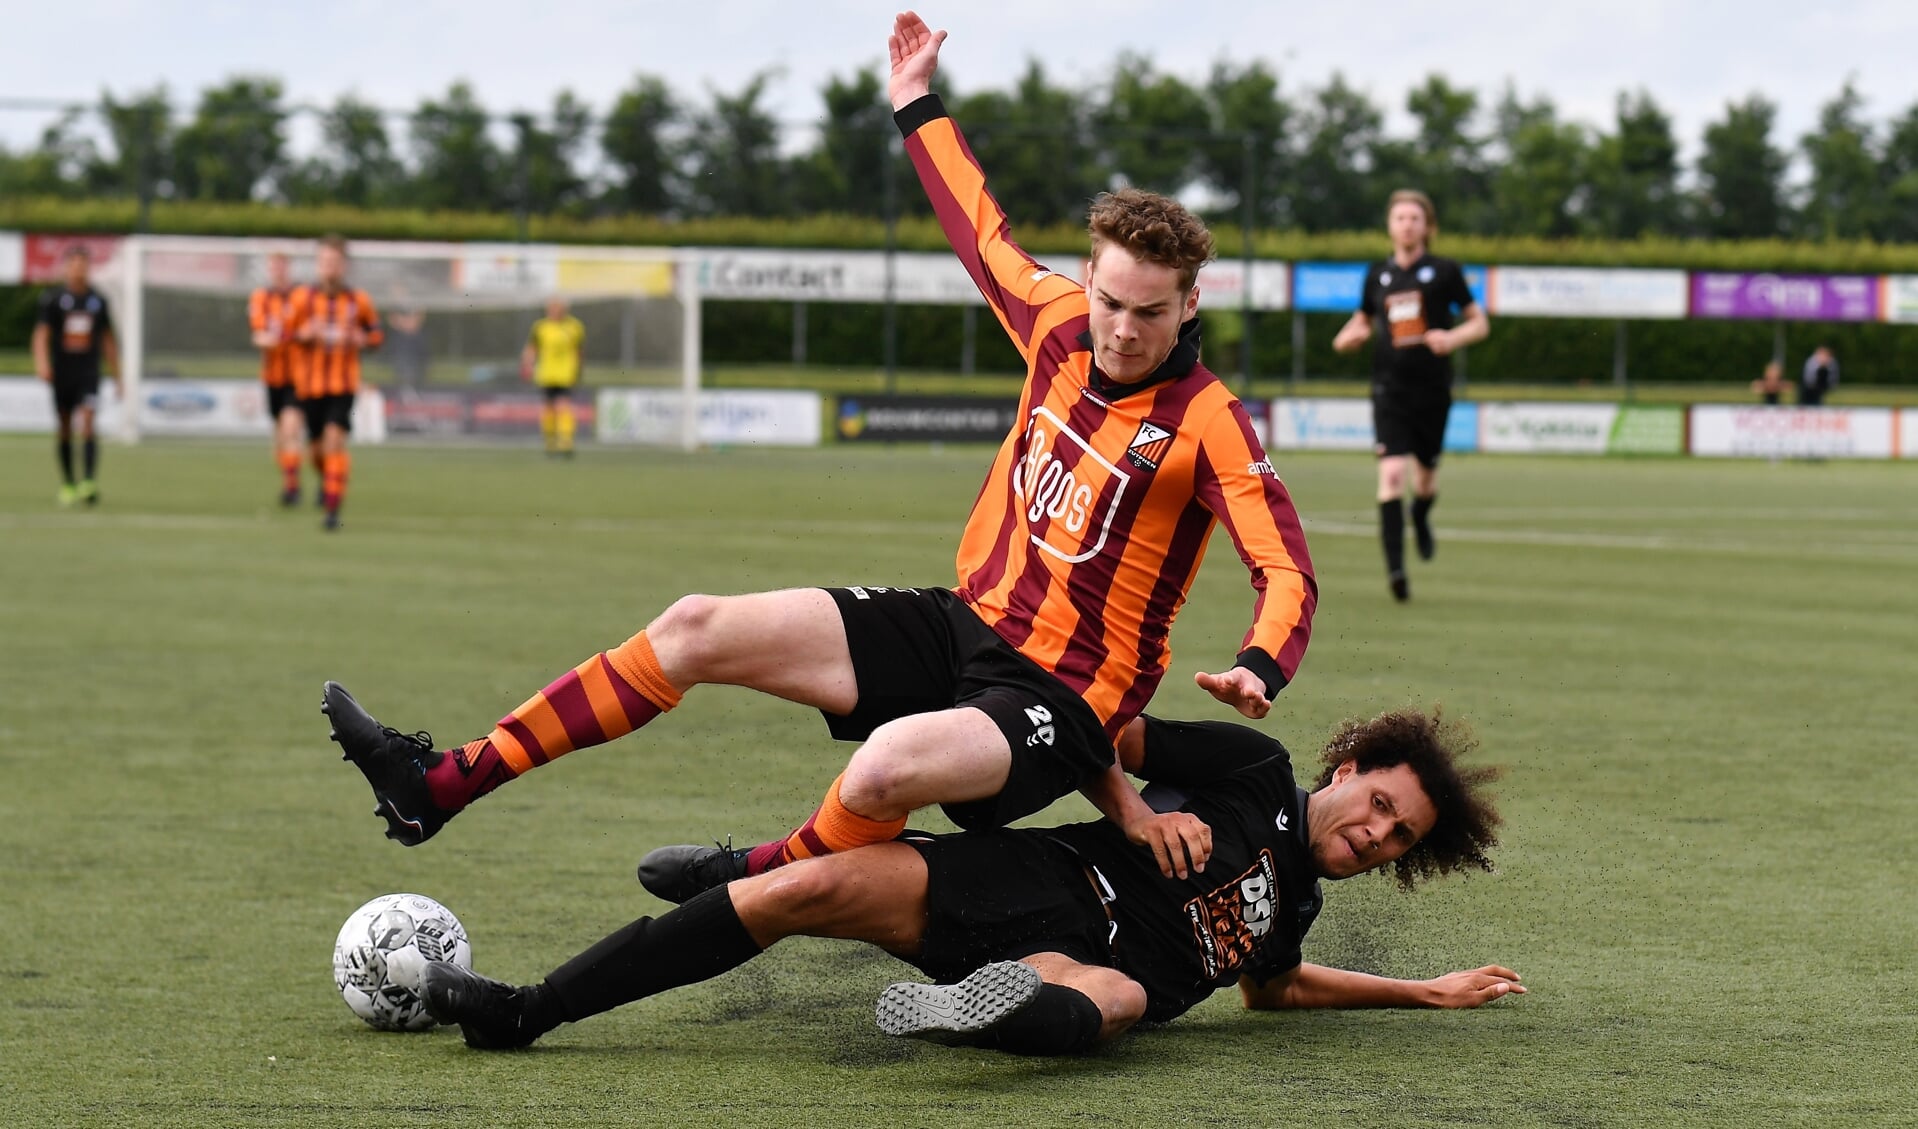 Het ging er fel aan toe in de wedstrijd FC Zutphen tegen ESA die in 3-3 eindigde. Hier wordt Timon Kuiper met een flinke sliding aangepakt. Foto: Hans ten Brinke